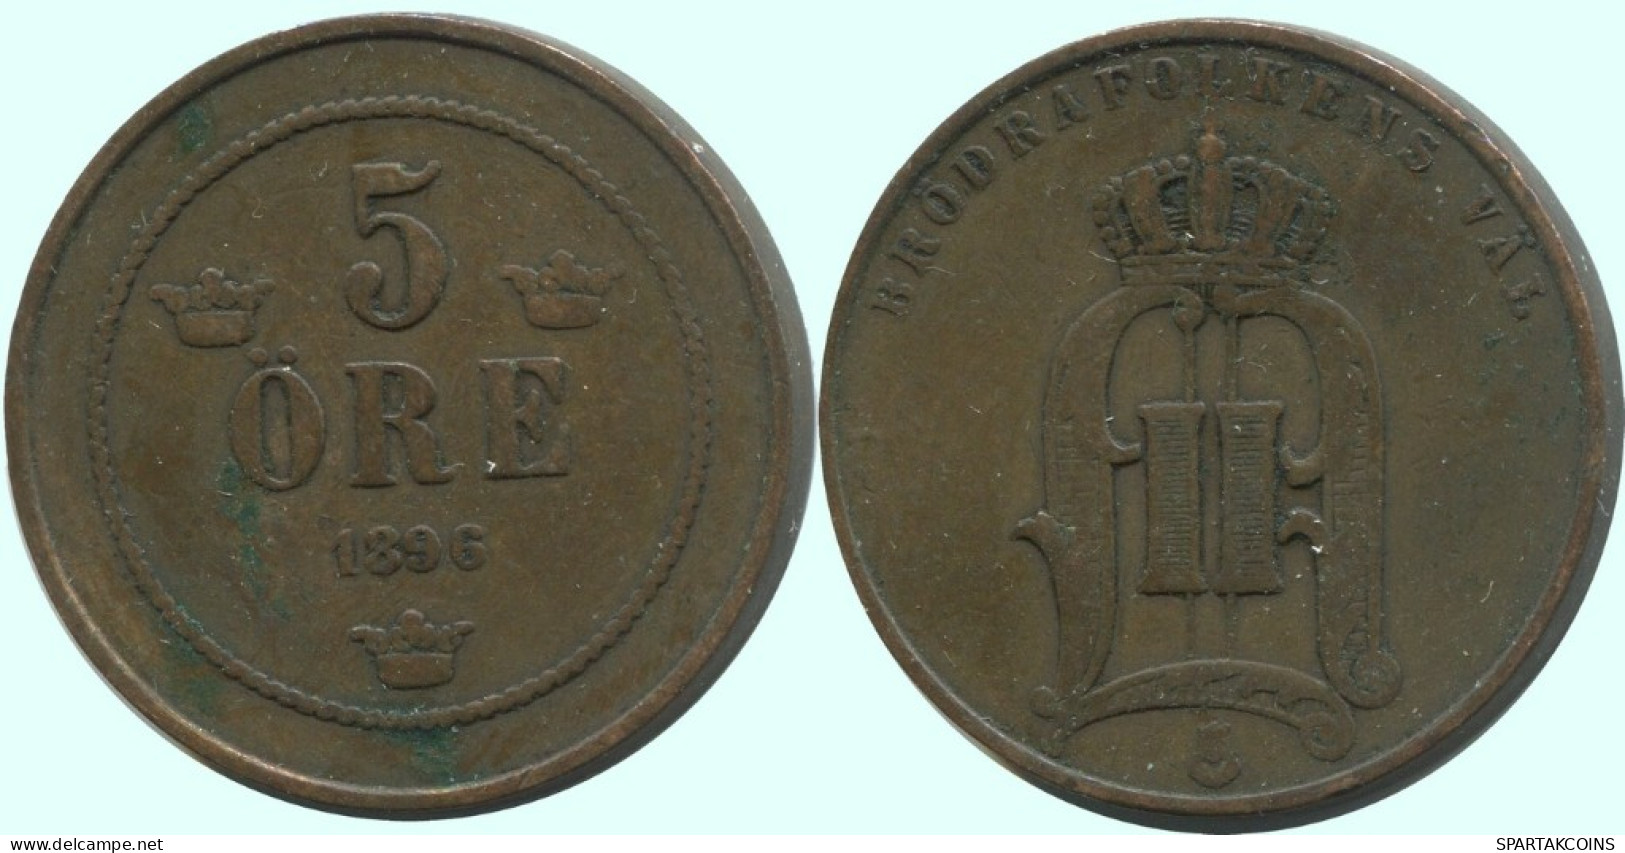 5 ORE 1896 SWEDEN Coin #AC652.2.U.A - Suecia